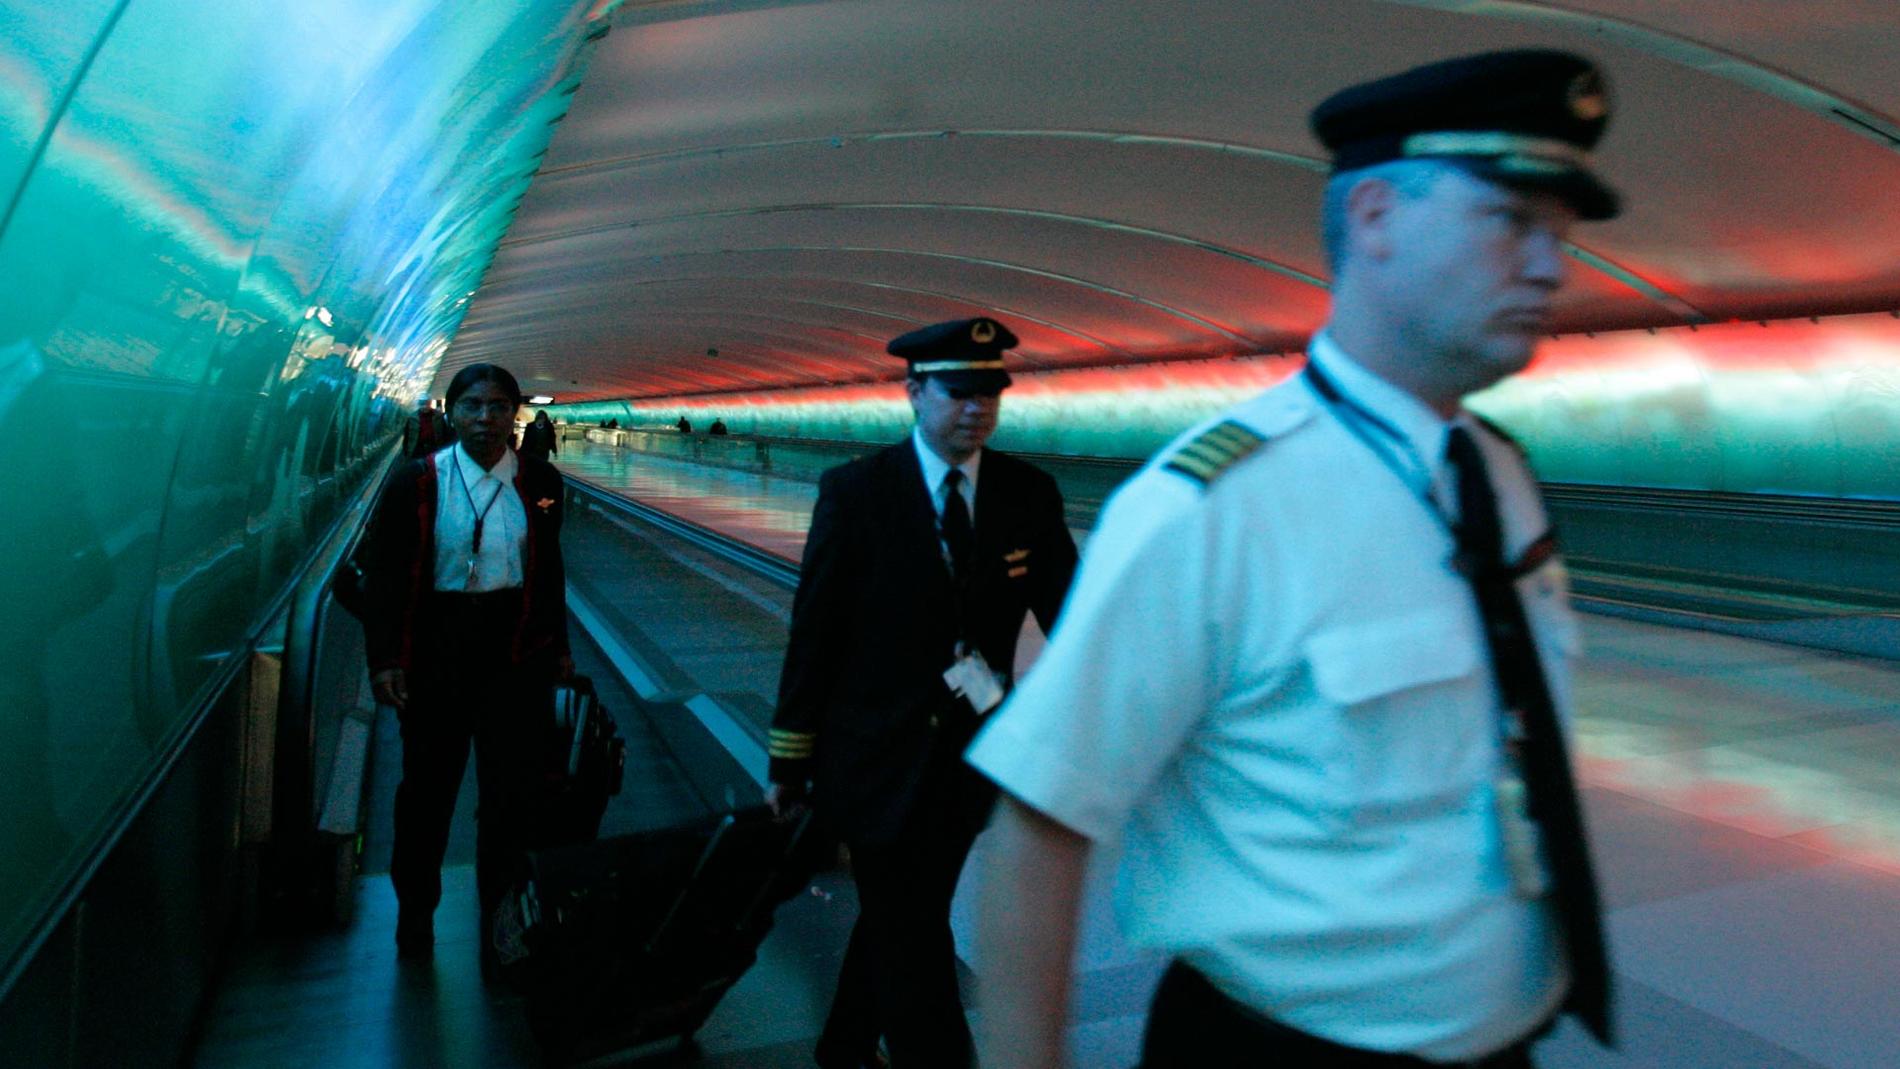 Den traditionella och tidsödande säkerhetskontrollen kan ersättas med tunnlar där passagerarna ”screenas” medan de går mot gaten. Bilden är från flygplatsen i Detroit.